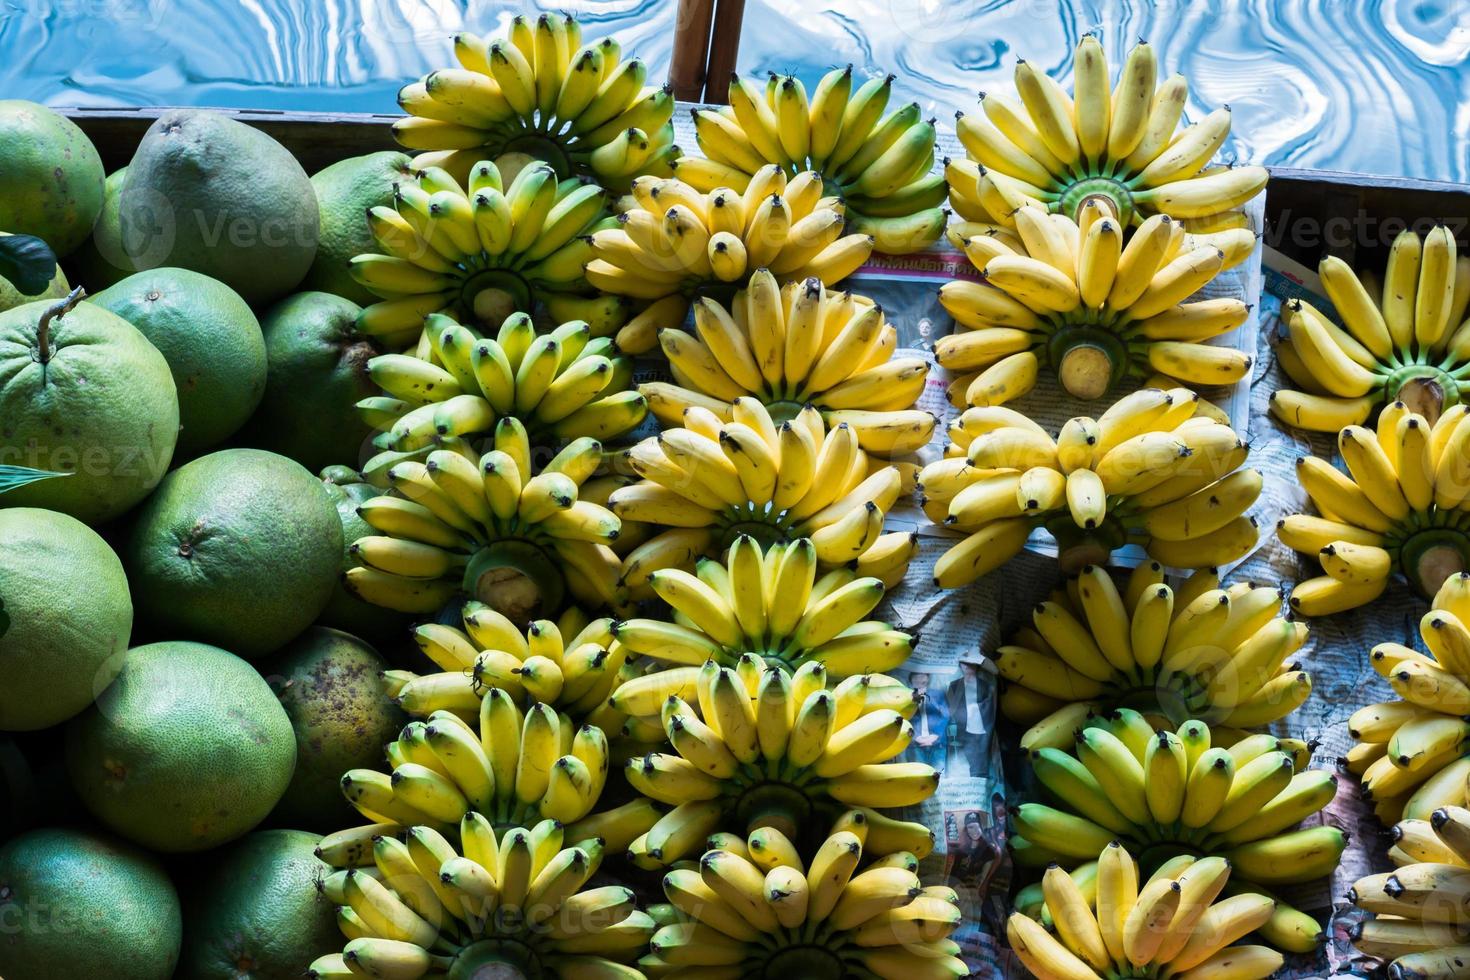 frukt till salu på en marknad foto